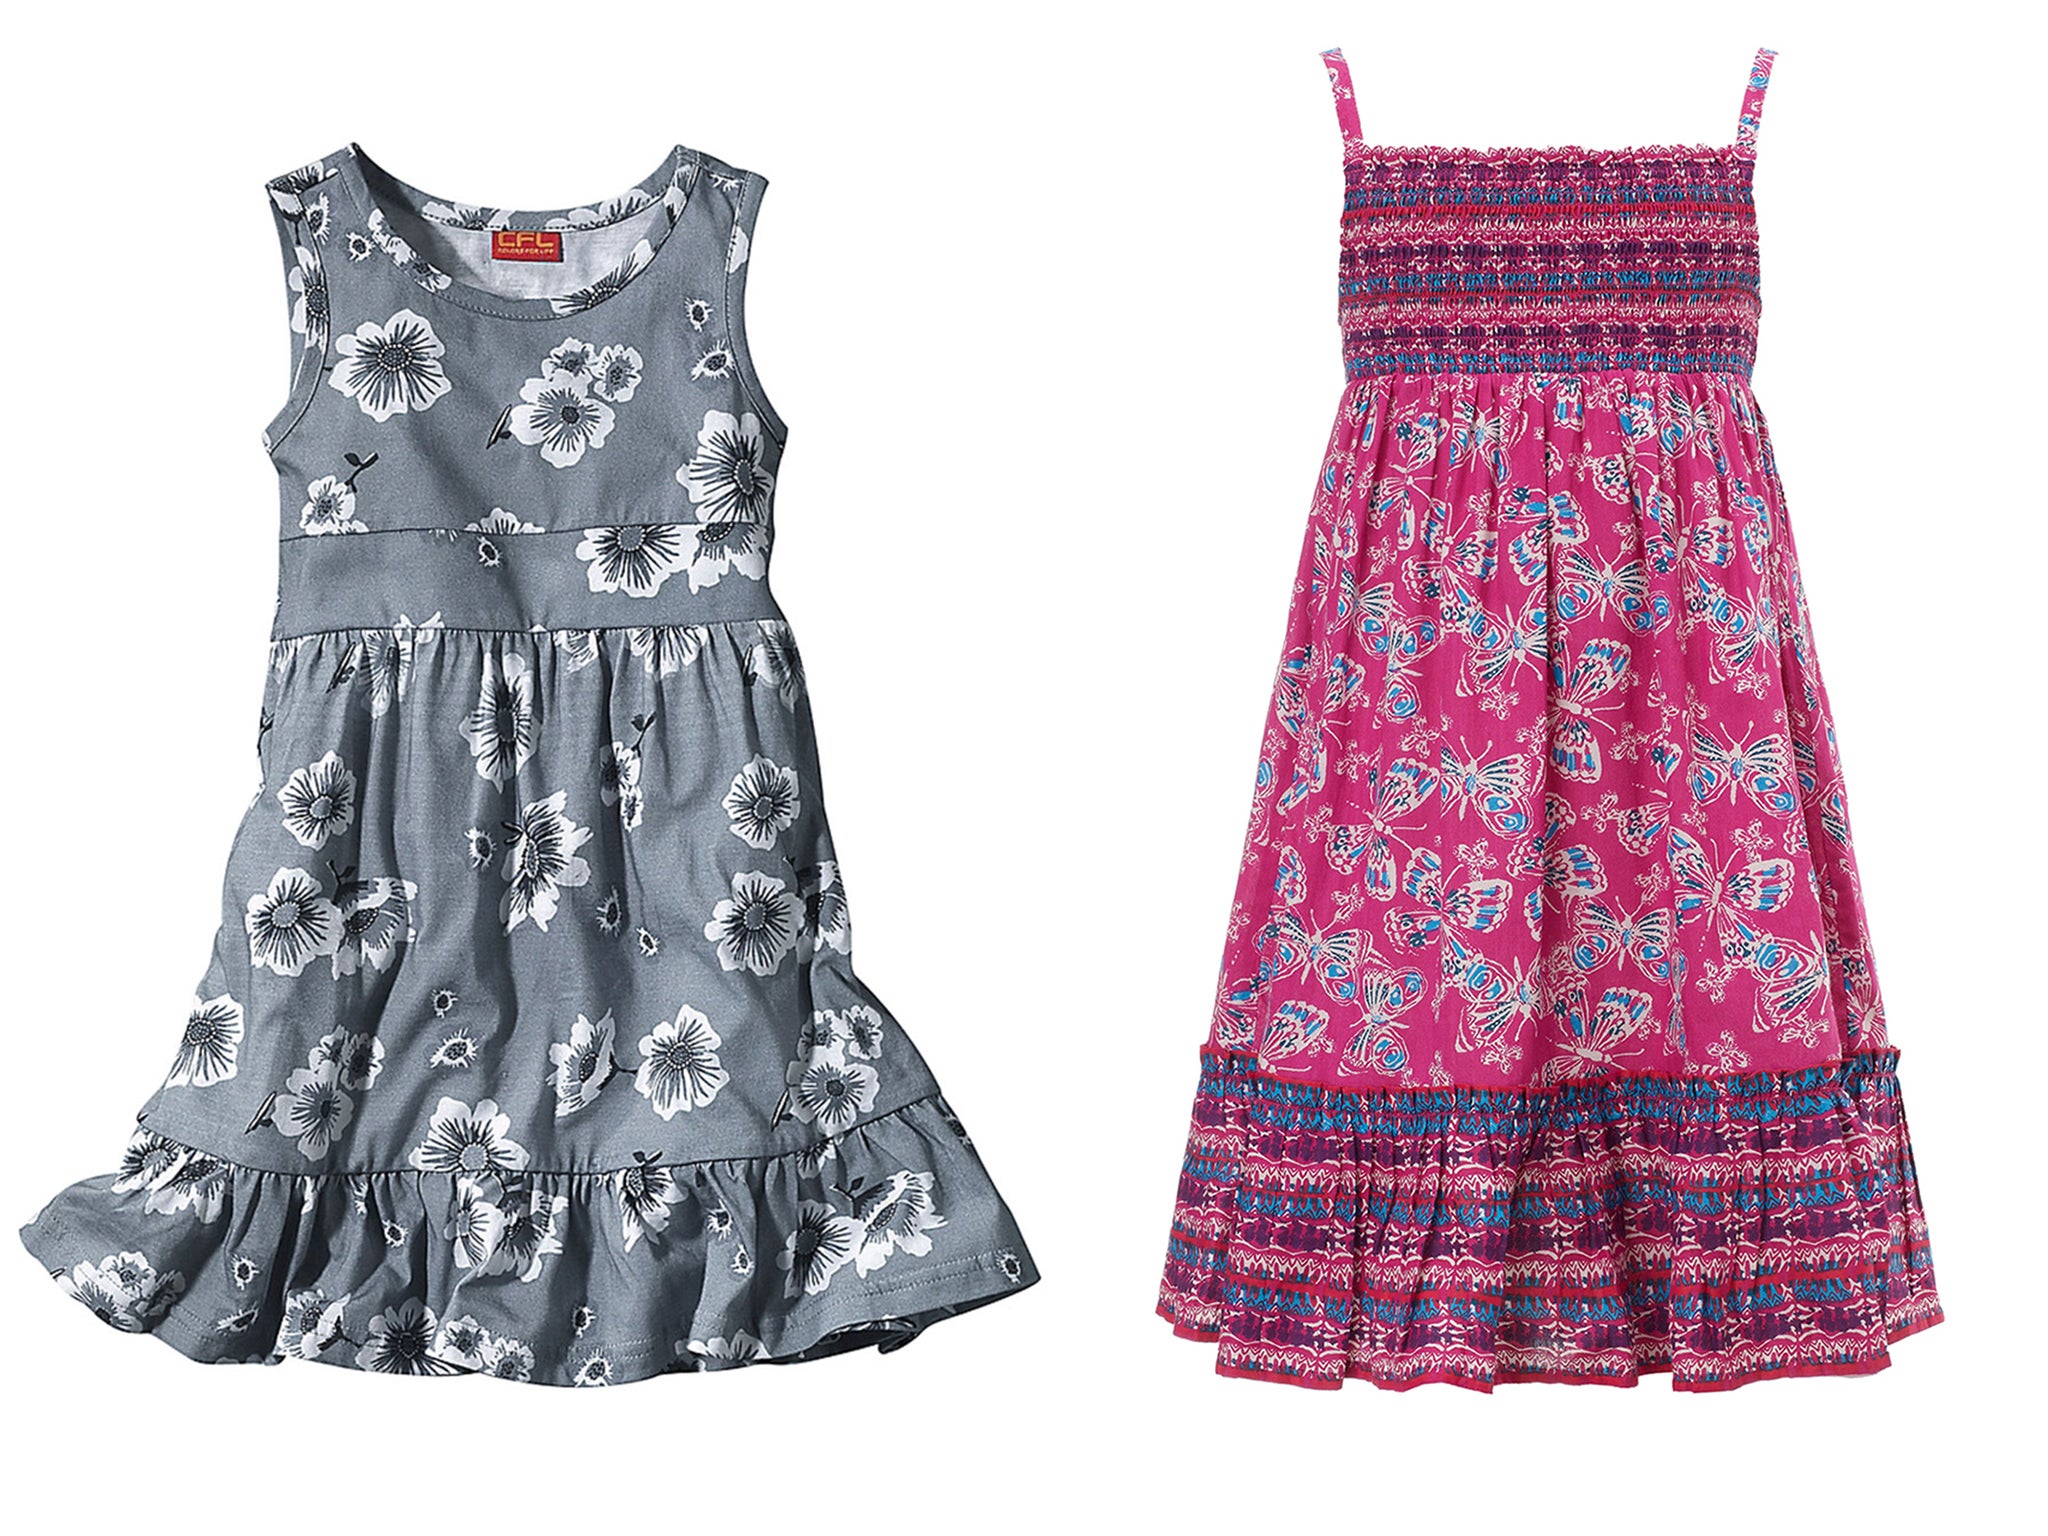 17 Most Beautiful Chiffon Dresses for Little Girls - Creative Fashion Kids